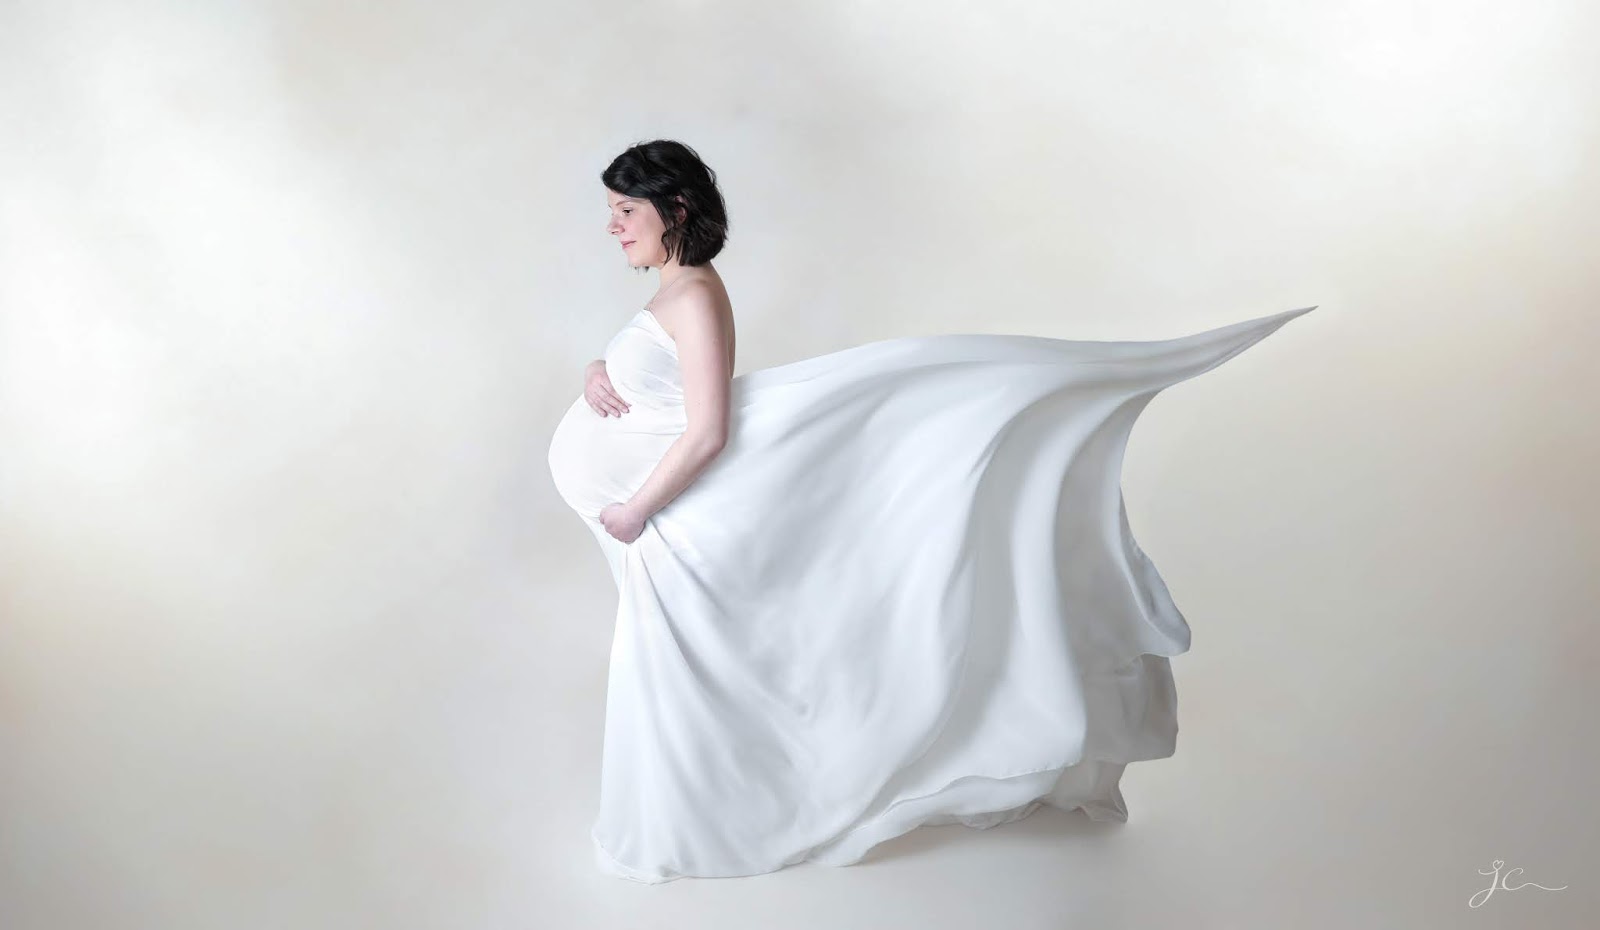 shooting photo grossesse enceinte professionnel studio maternité photographe julie charles les gommettes de melo 